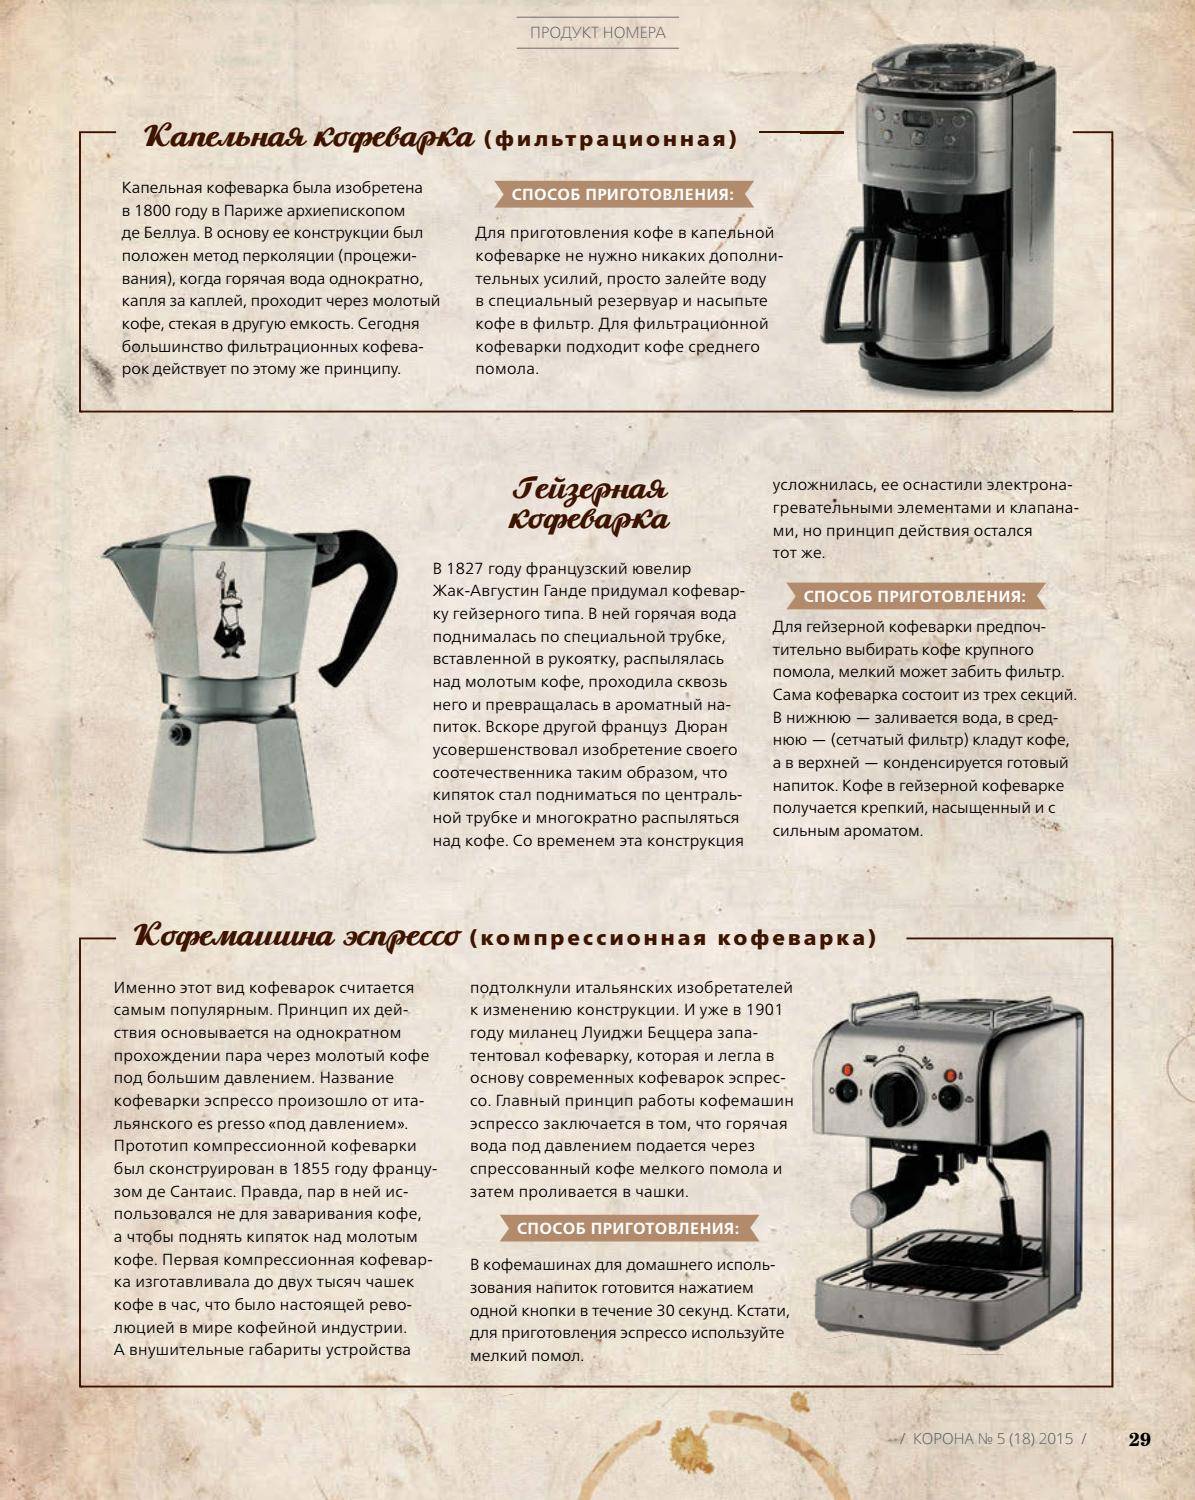 Как варить кофе в домашних условиях правильно и вкусно